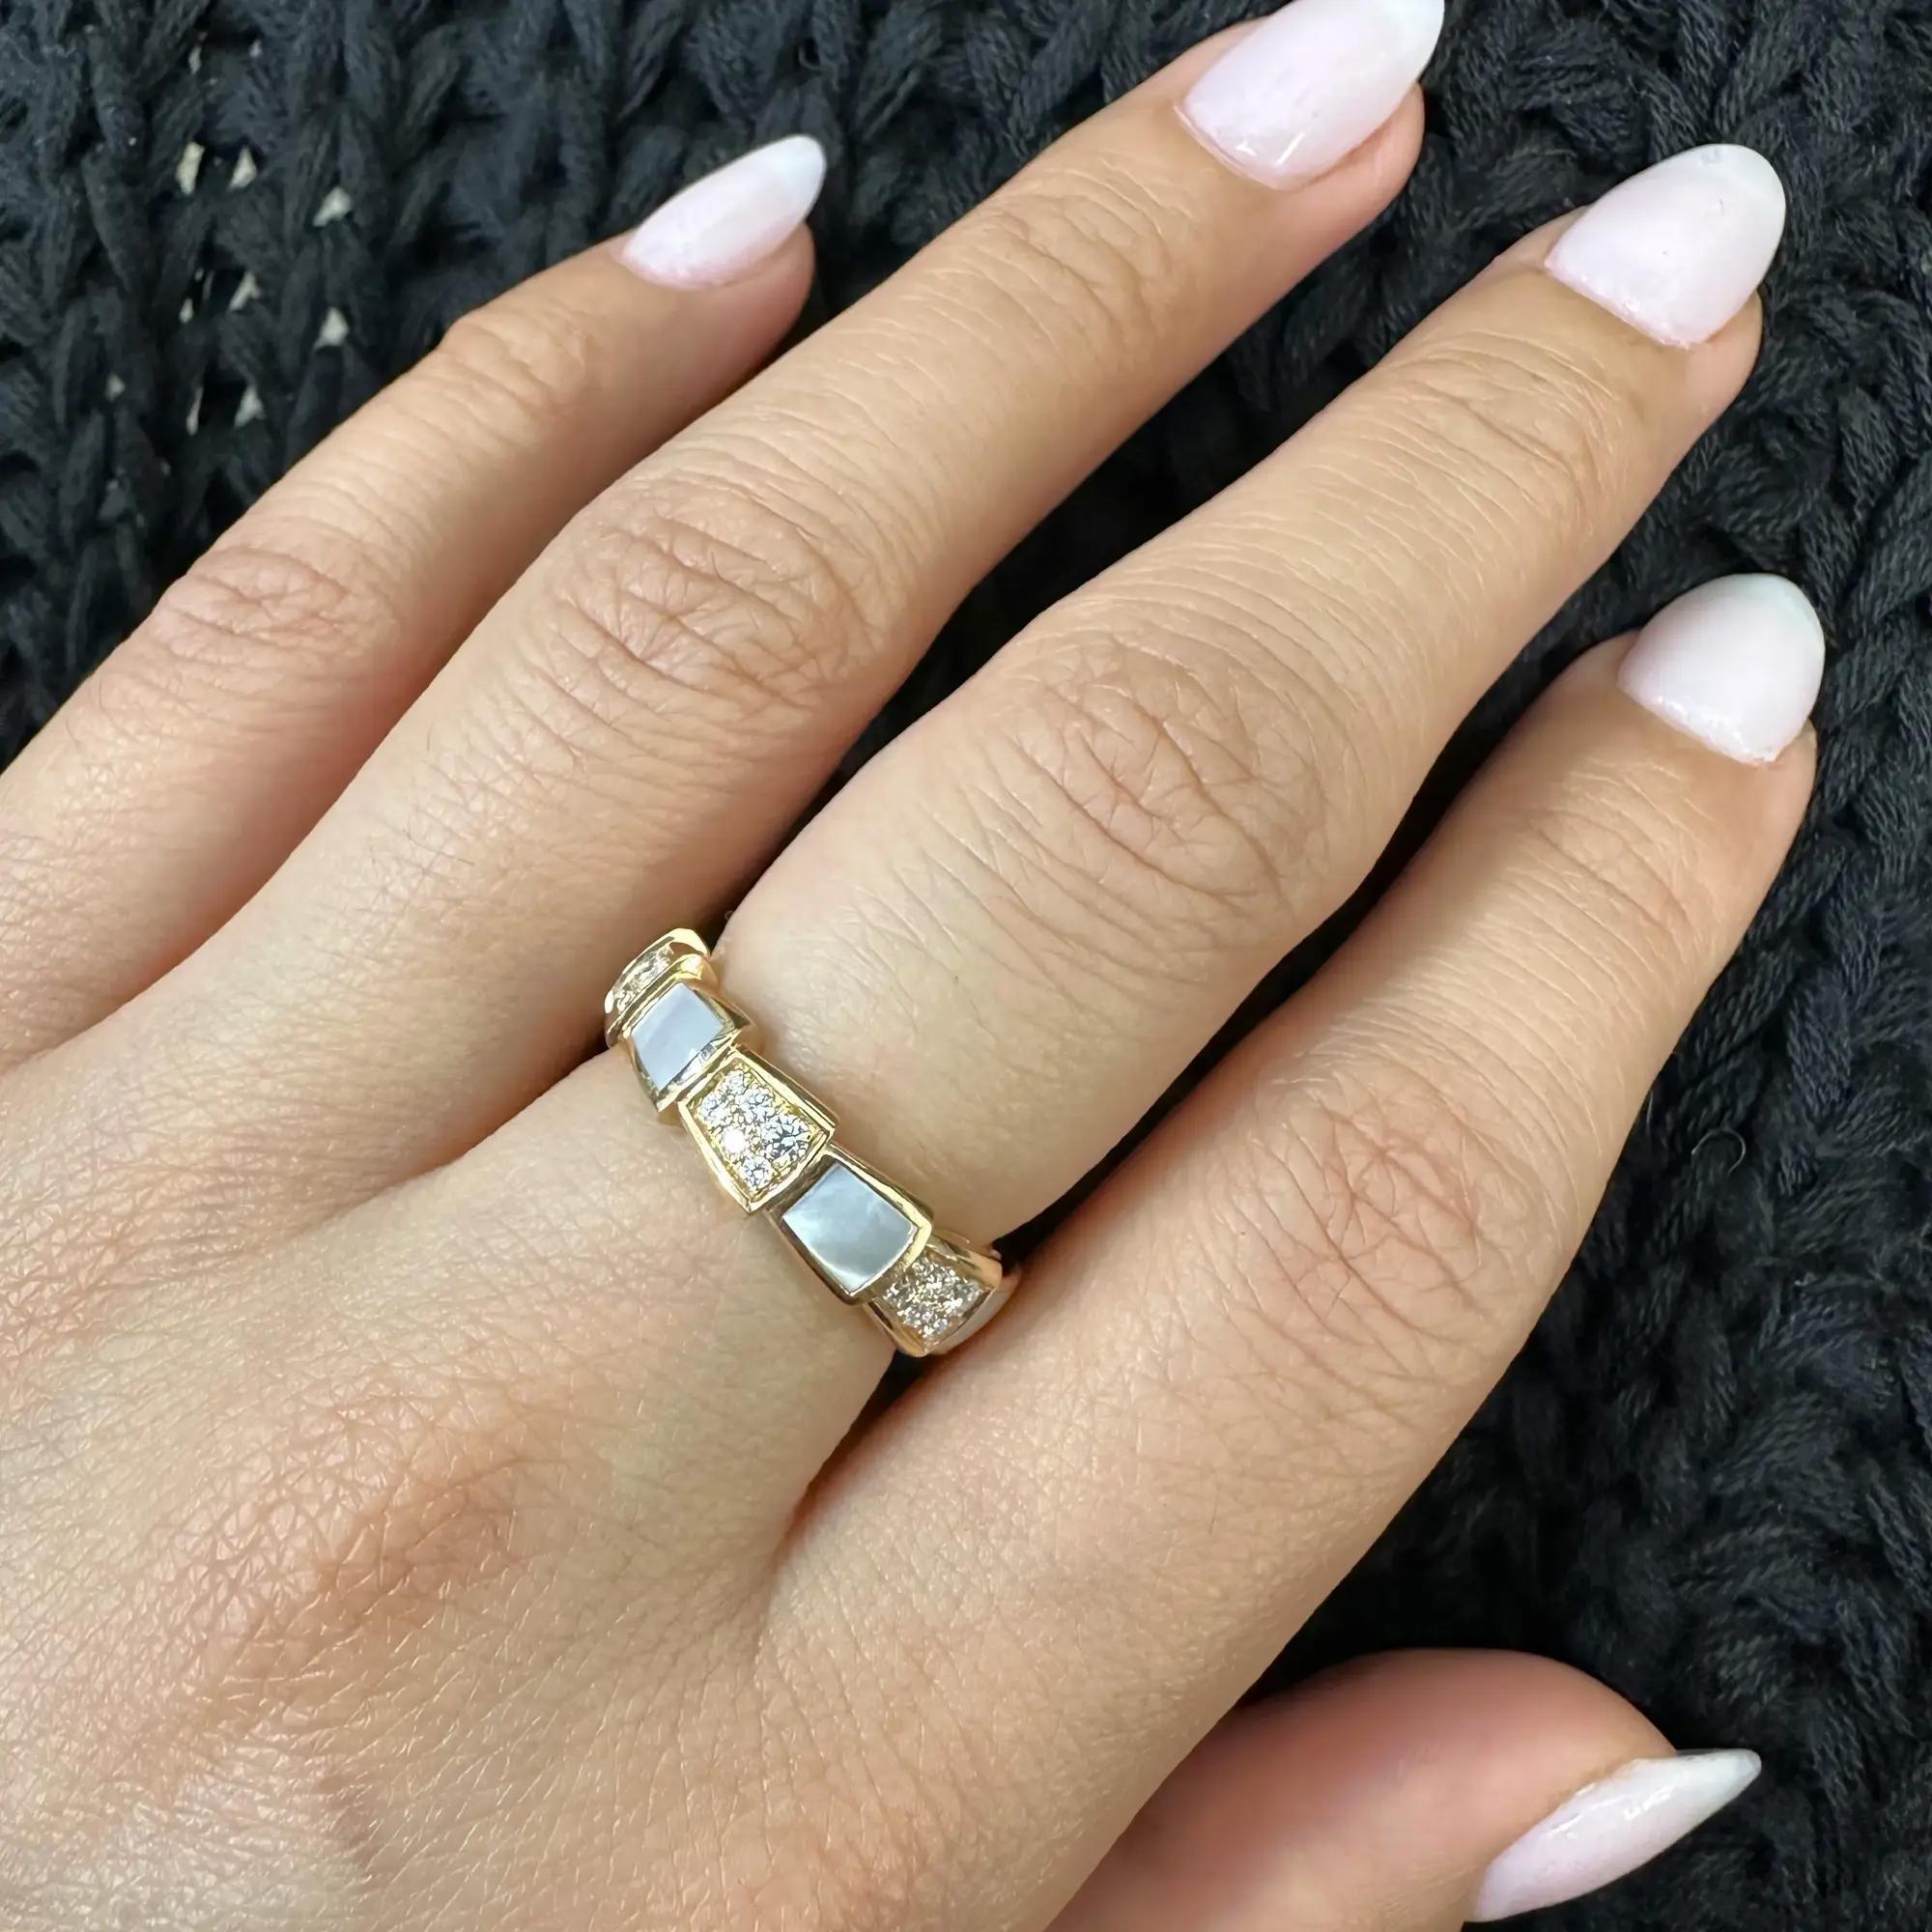 Dieser raffinierte und glamouröse Ring von Bvlgari windet sich um den Finger und besticht durch die kostbare Schönheit der Schuppen, die abwechselnd mit Perlmutt und runden Diamanten im Brillantschliff in Pave-Fassung besetzt sind. Gesamtgewicht der